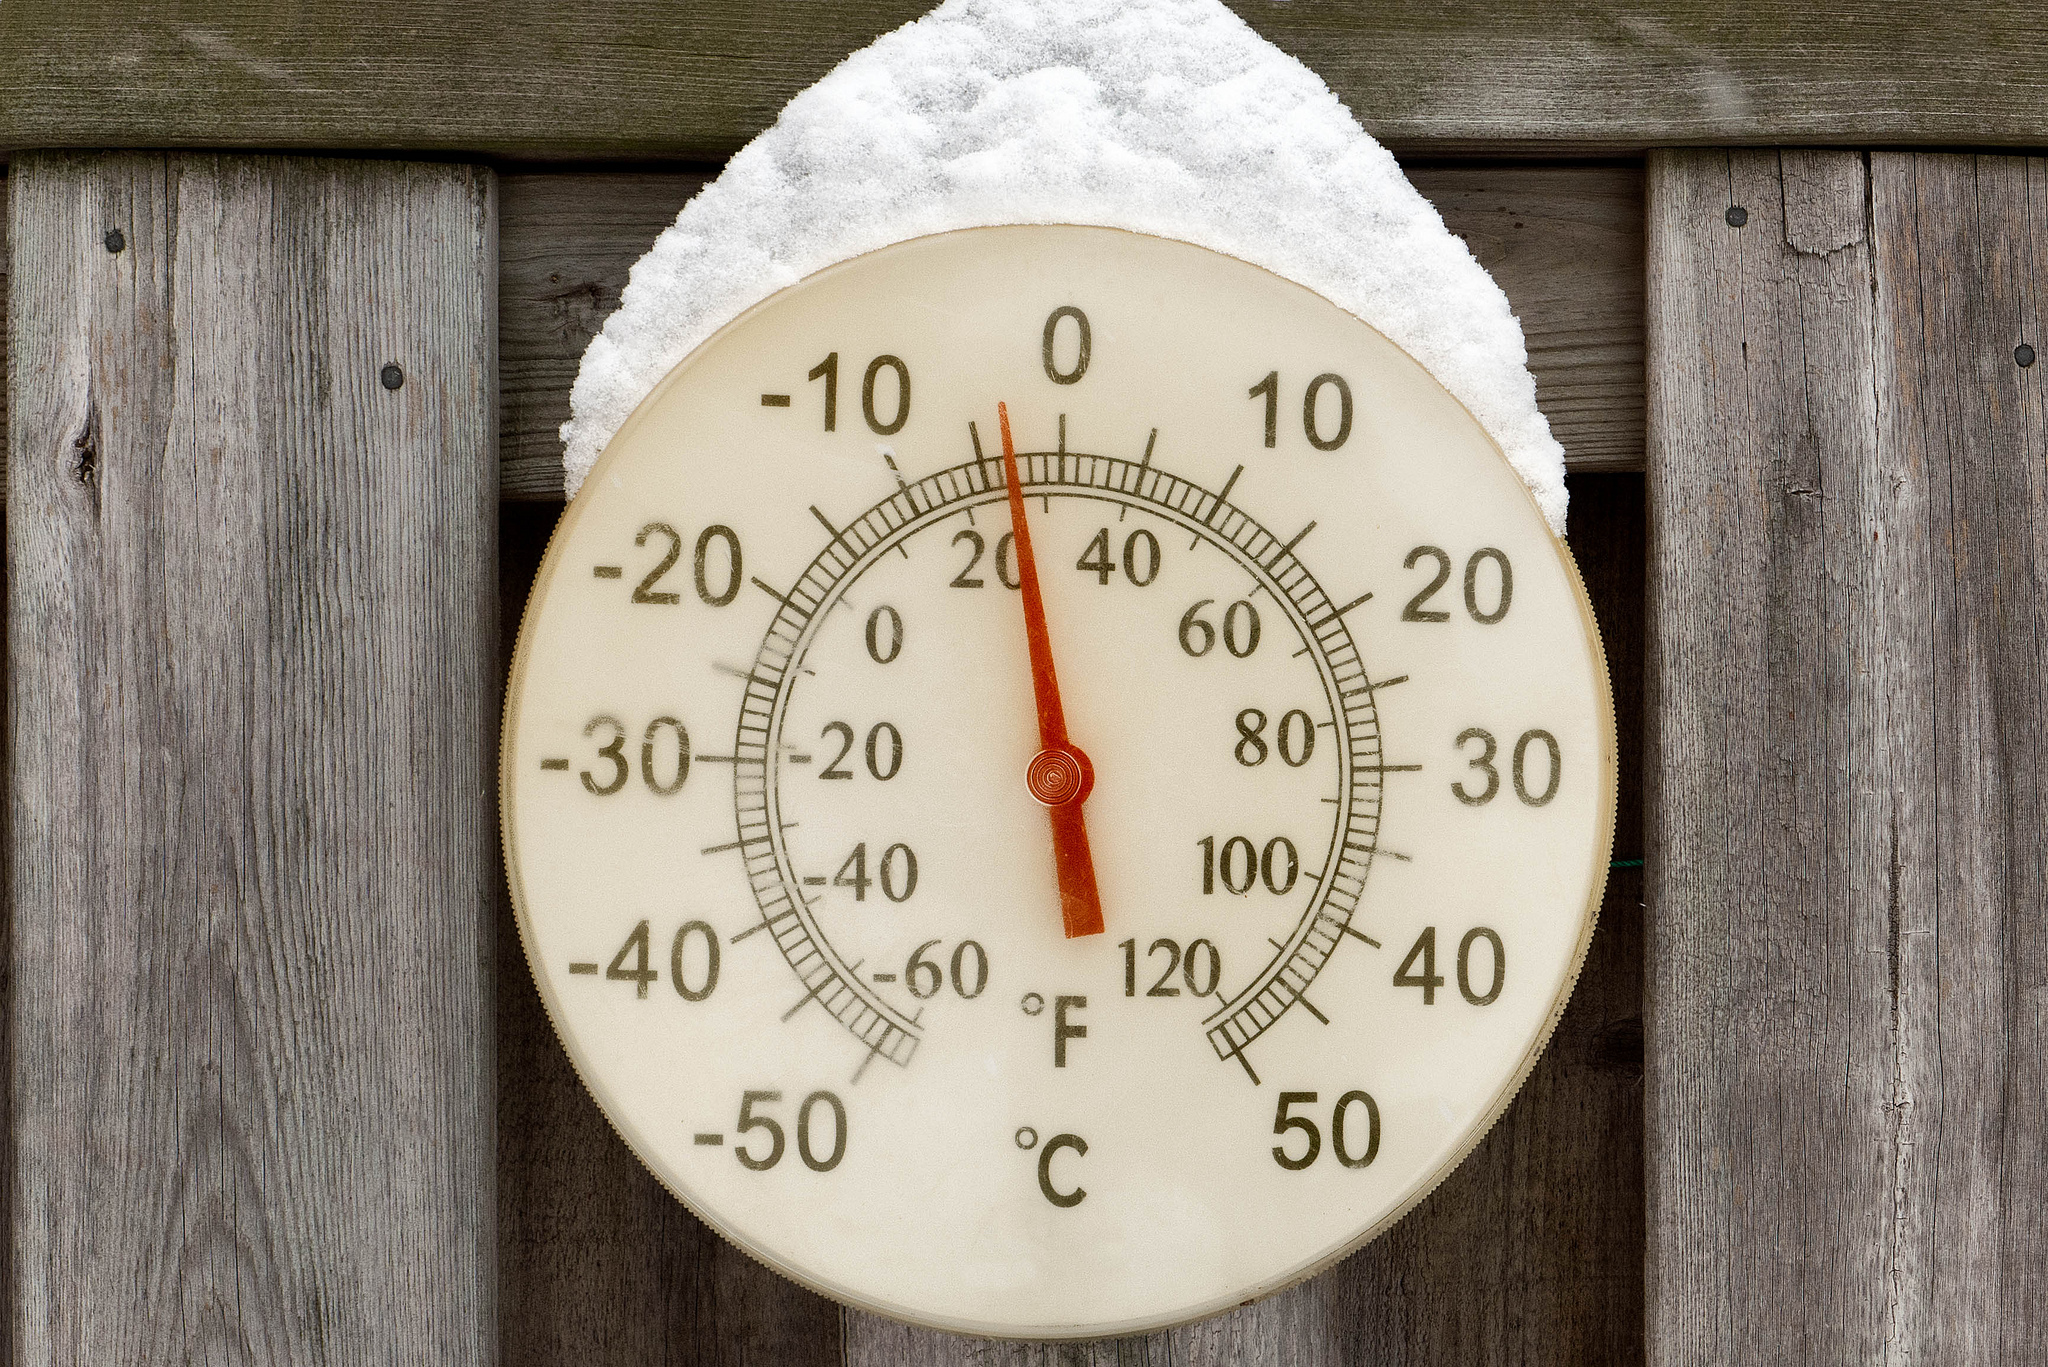 Degrés Celsius et degrés&nbsp;Fahrenheit sont utilisés pour indiquer la température dans la vie de tous les jours, contrairement au kelvin. © Joe deSousa, Flickr, DP